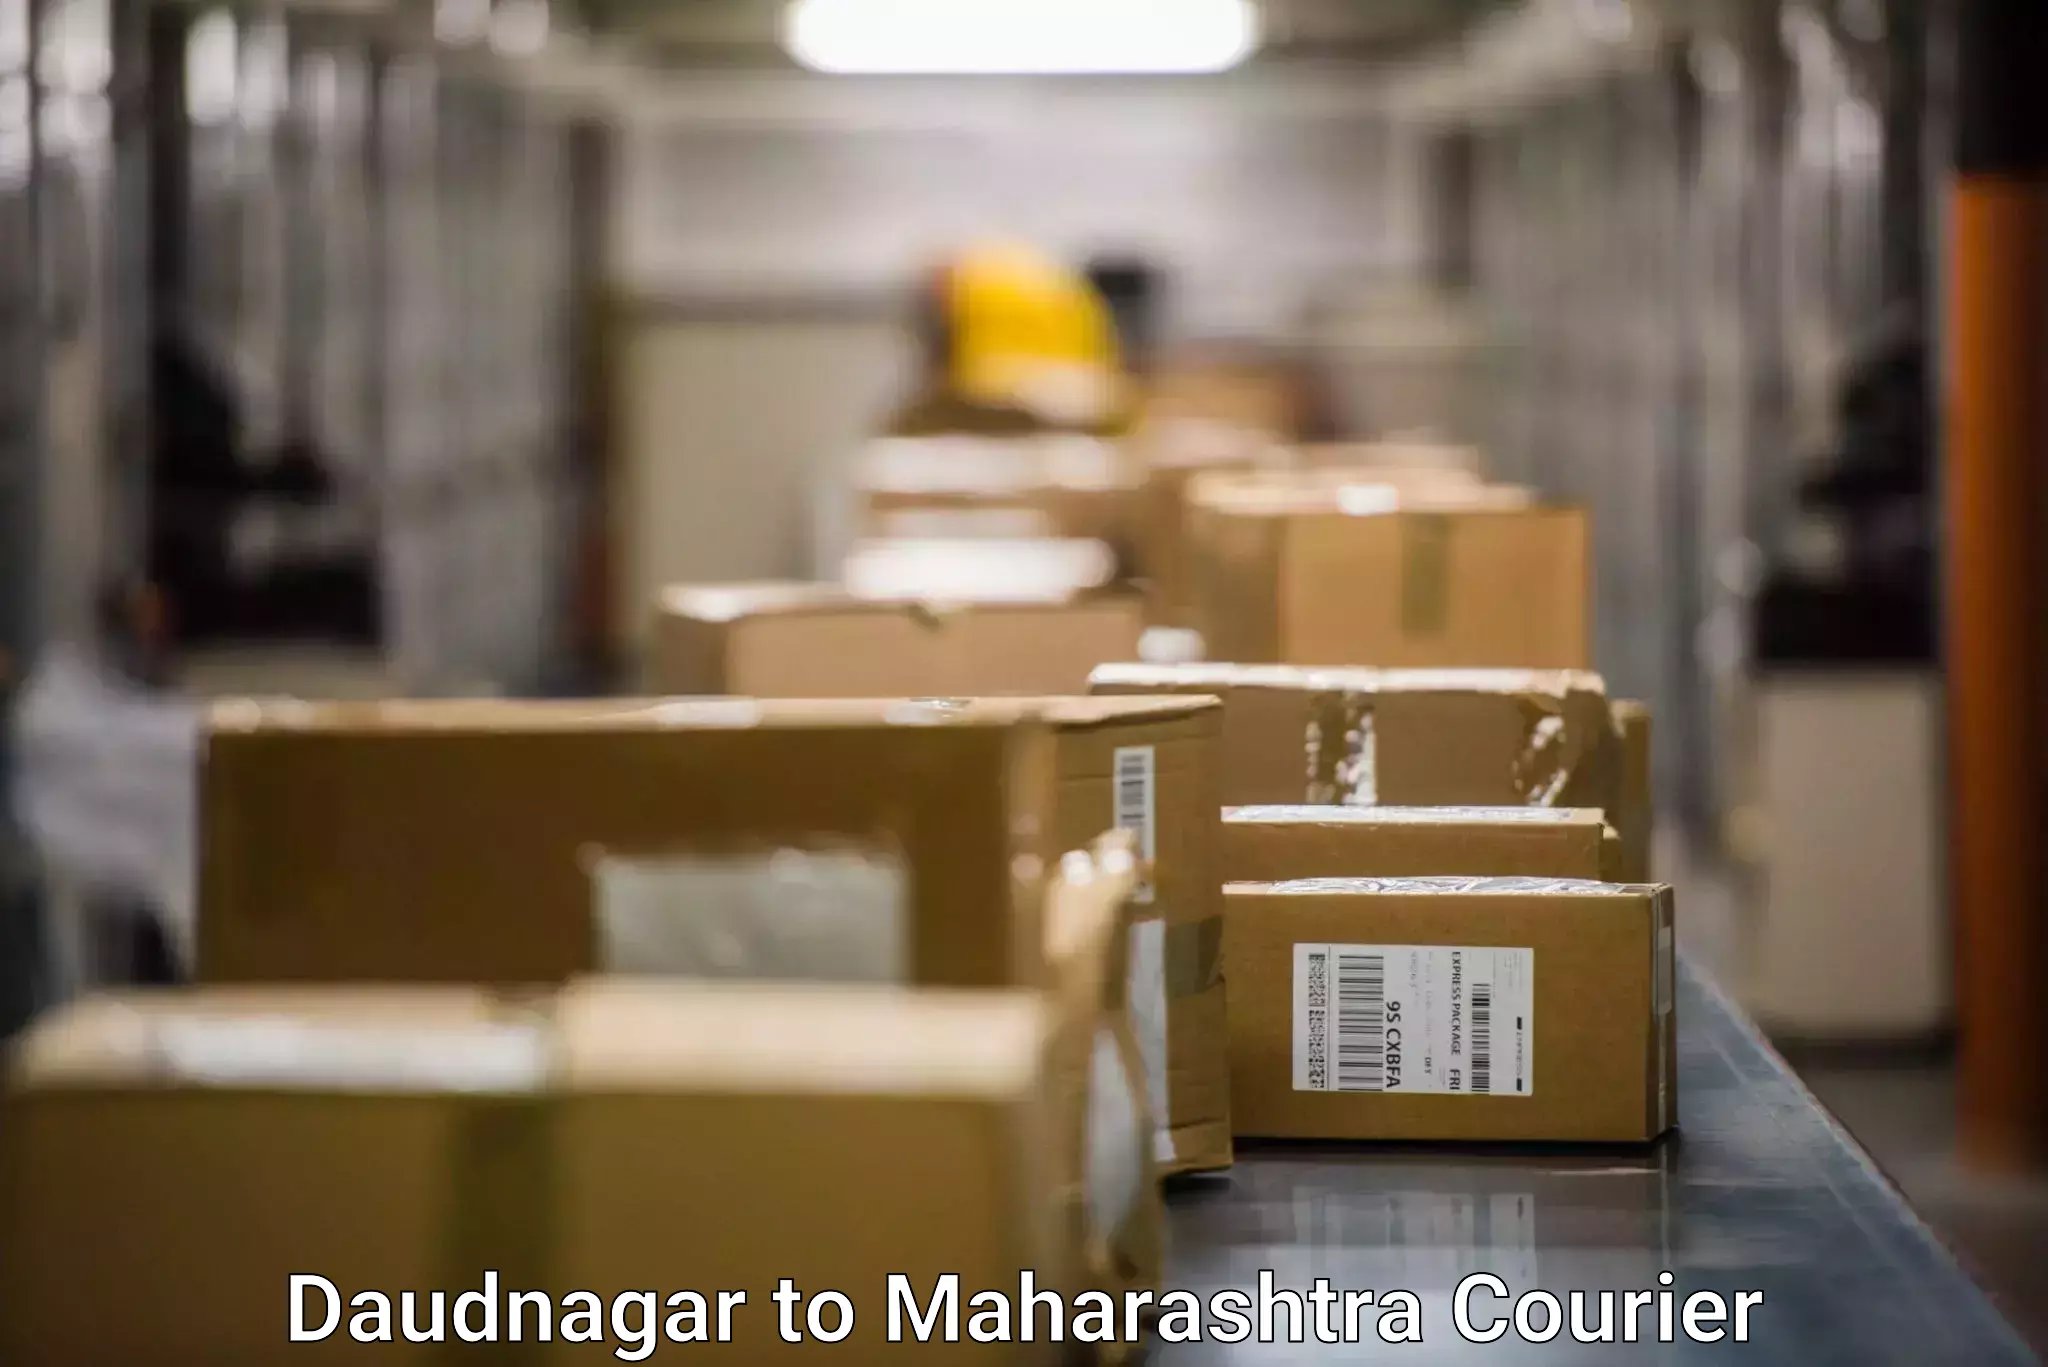 Express shipping Daudnagar to Mahabaleshwar